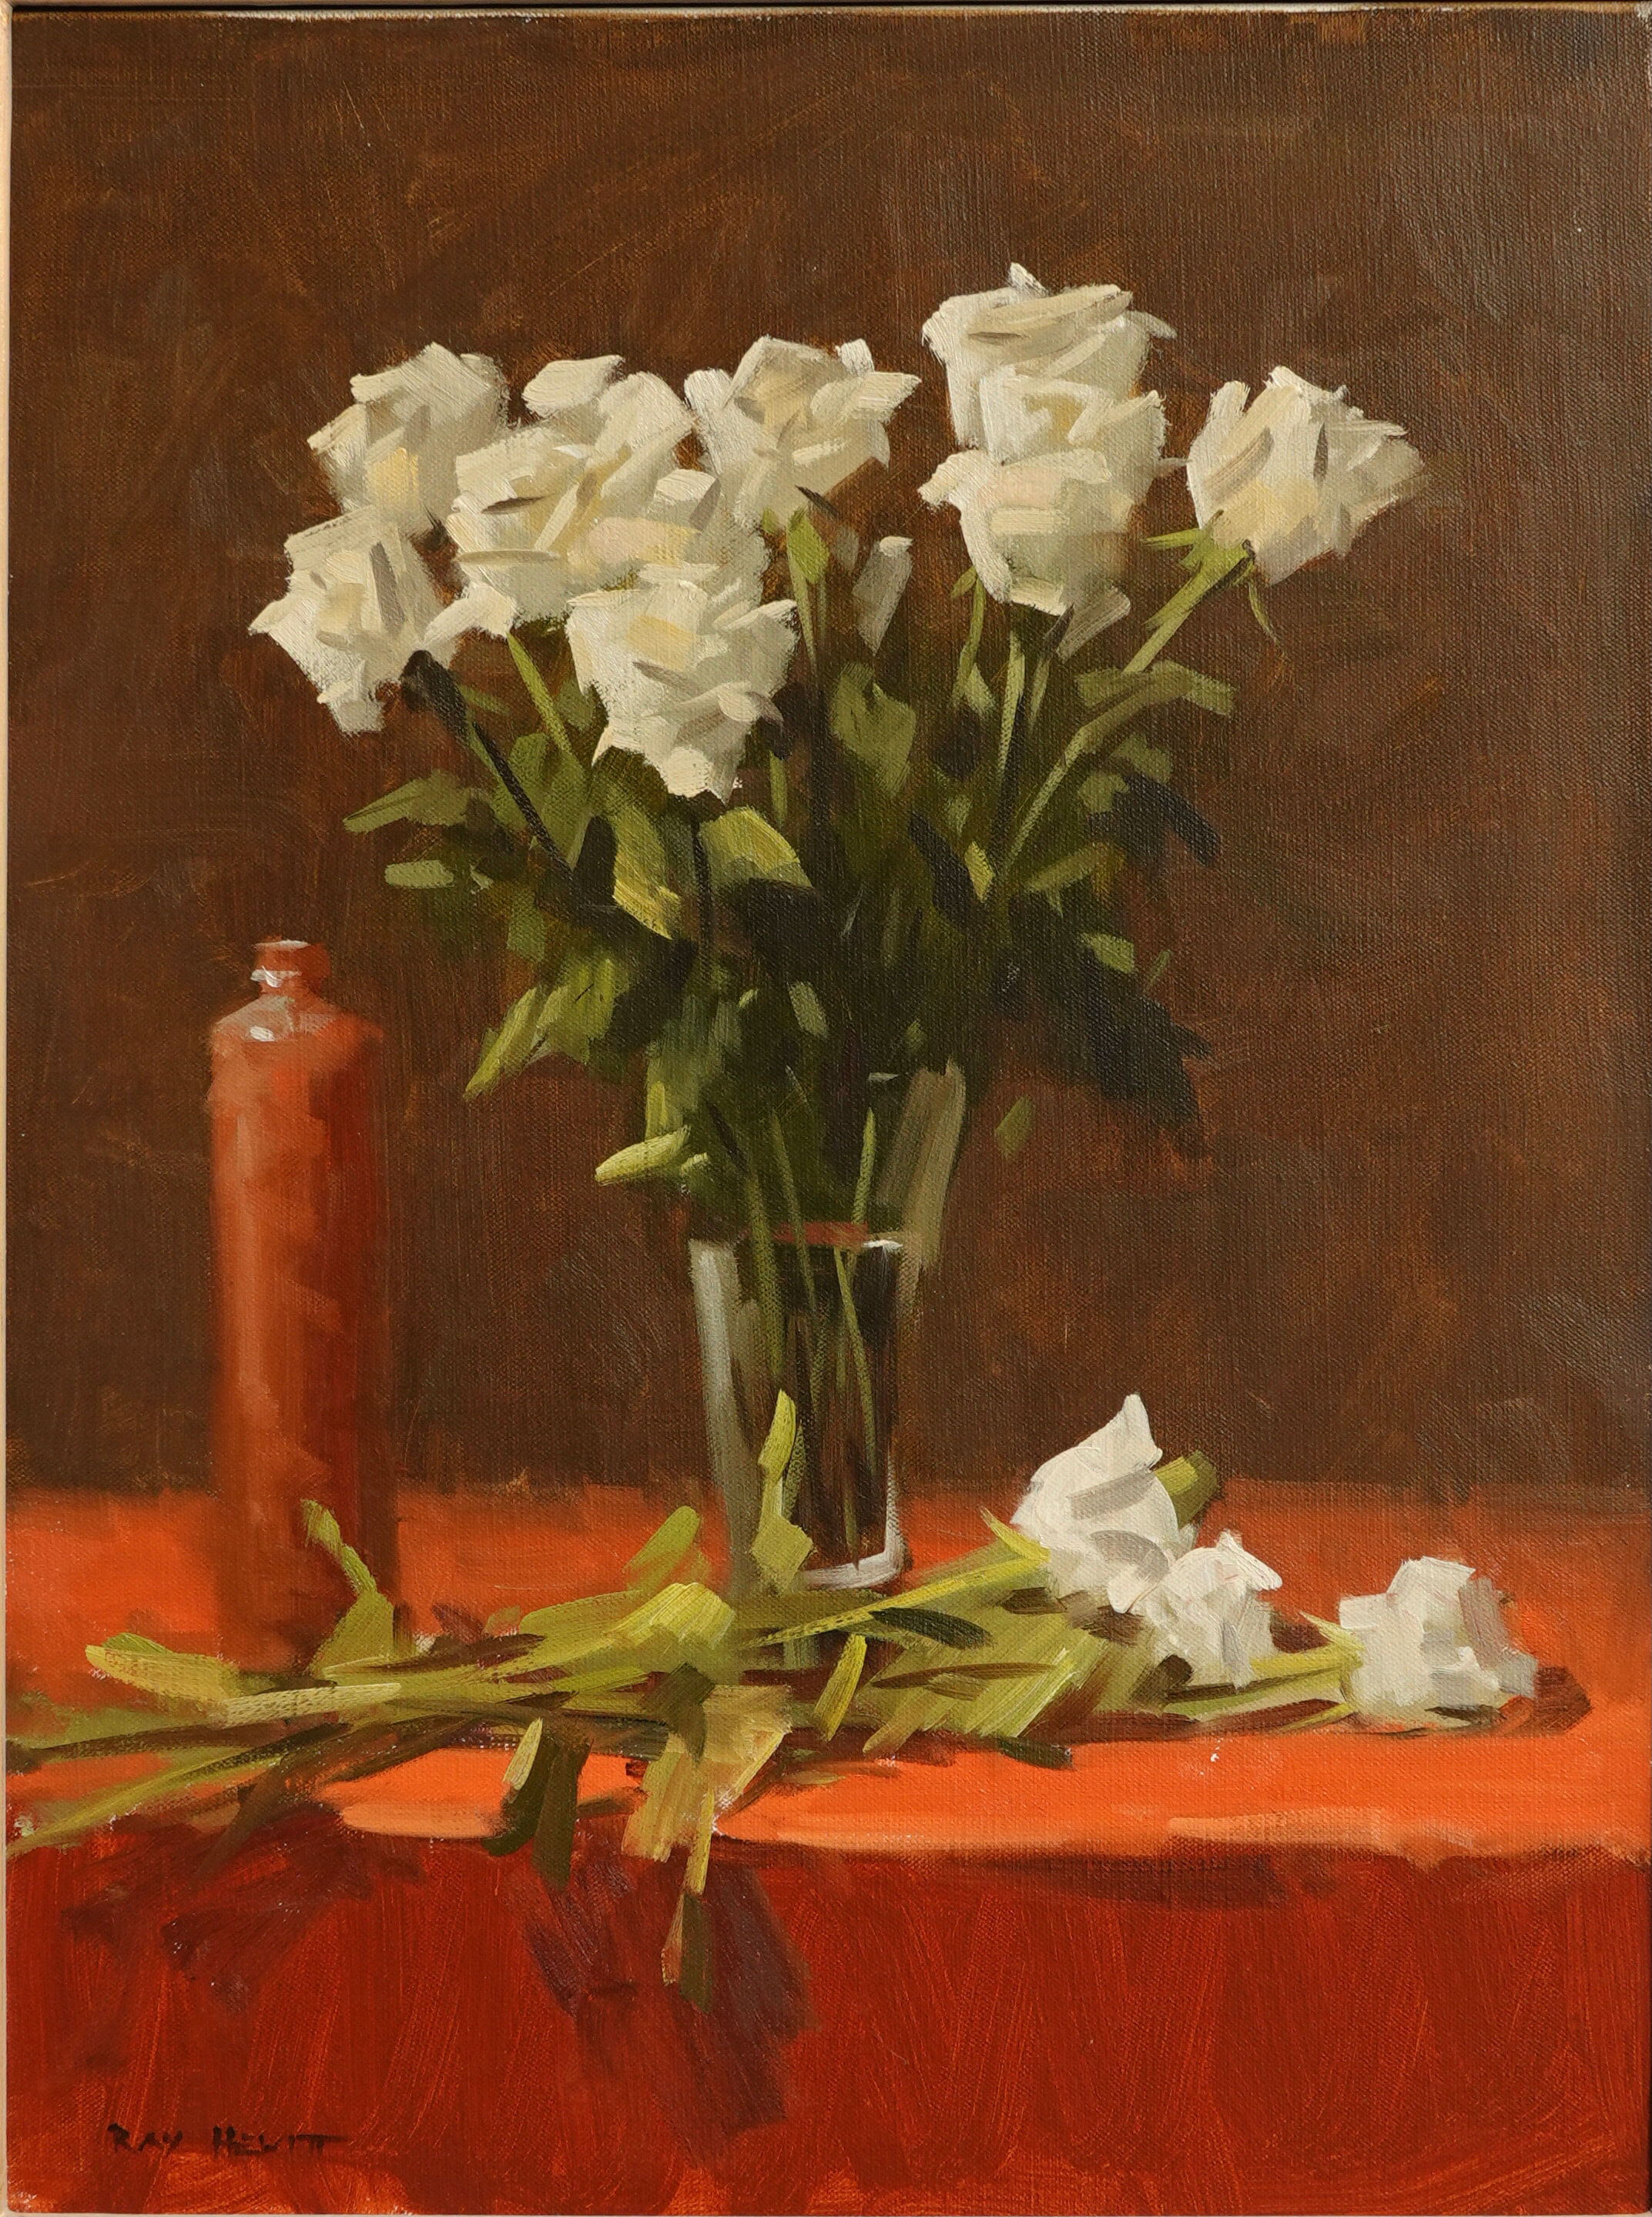 63. Ray Hewitt - White Roses